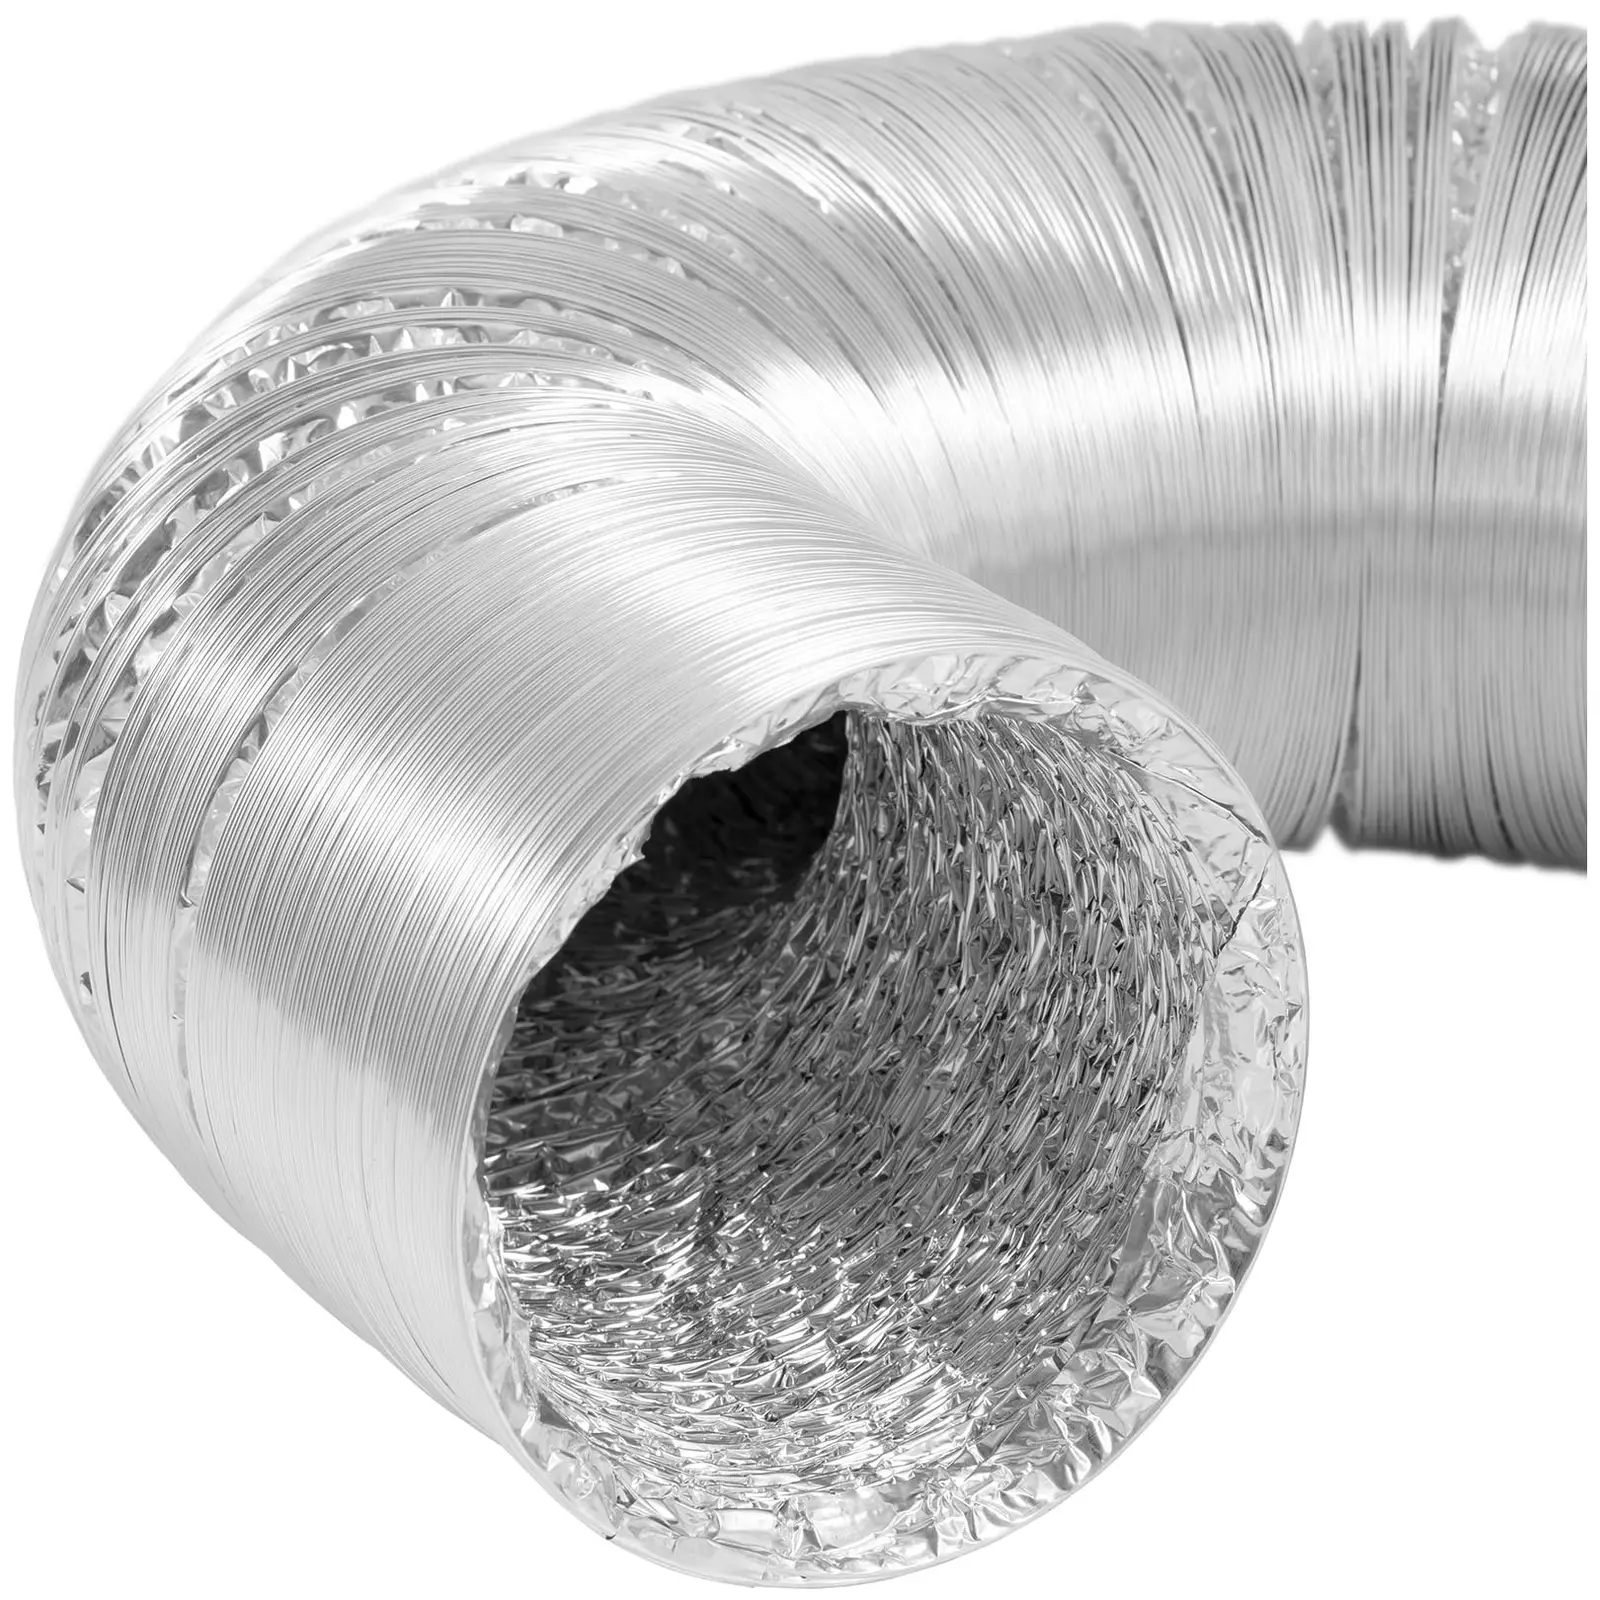 Klimaanleggslange - Ø 125 mm - 10 m lengde - aluminium